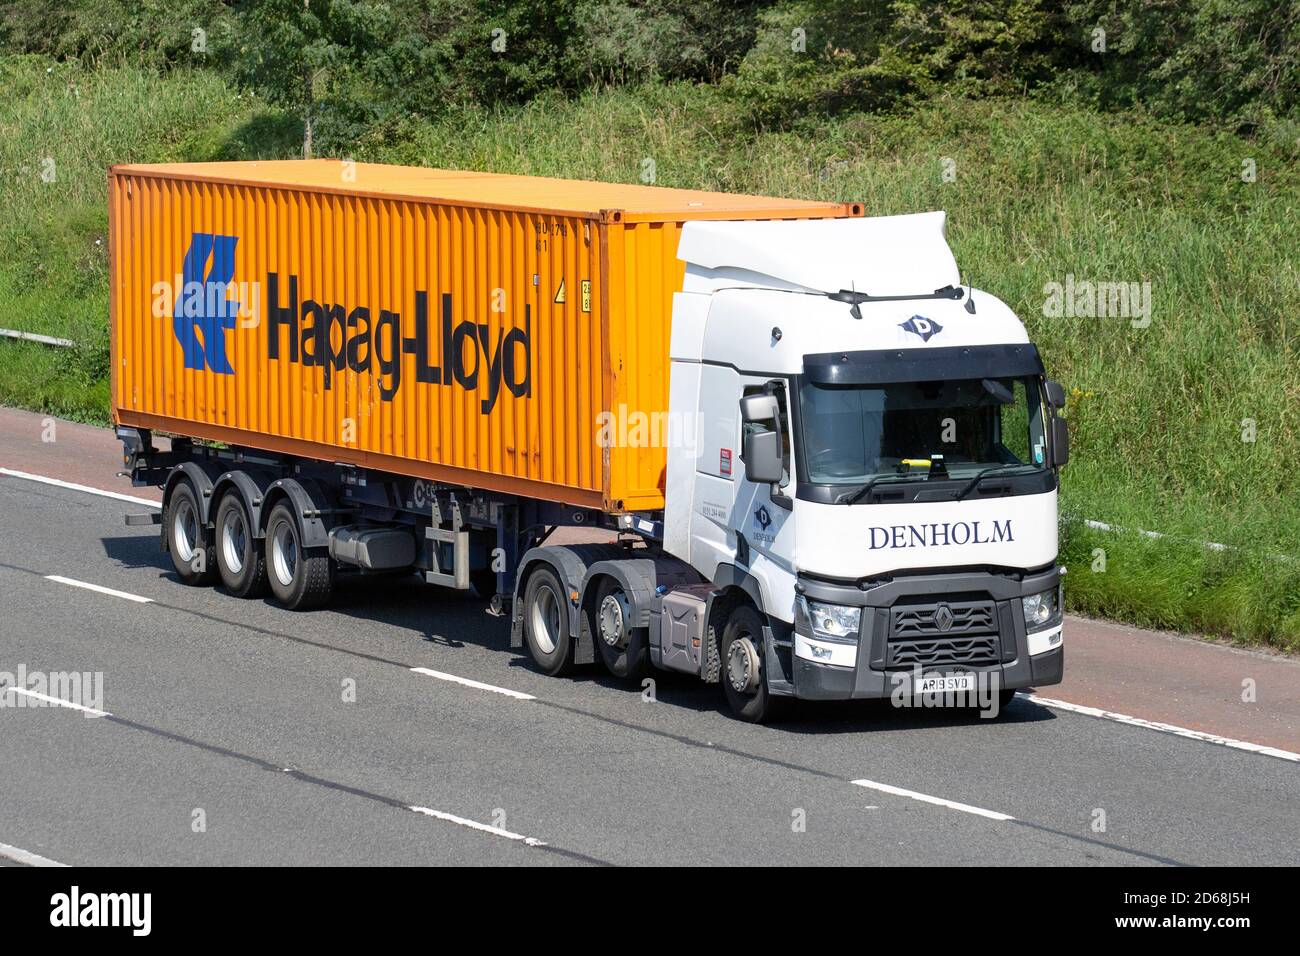 Denholm Haulage livreur Trucks, camion, poids lourds,transport, Renault Trucks, porte-bagages, véhicule 2019, industrie européenne du transport commercial, articulé HGV, M6 à Manchester, Royaume-Uni Banque D'Images